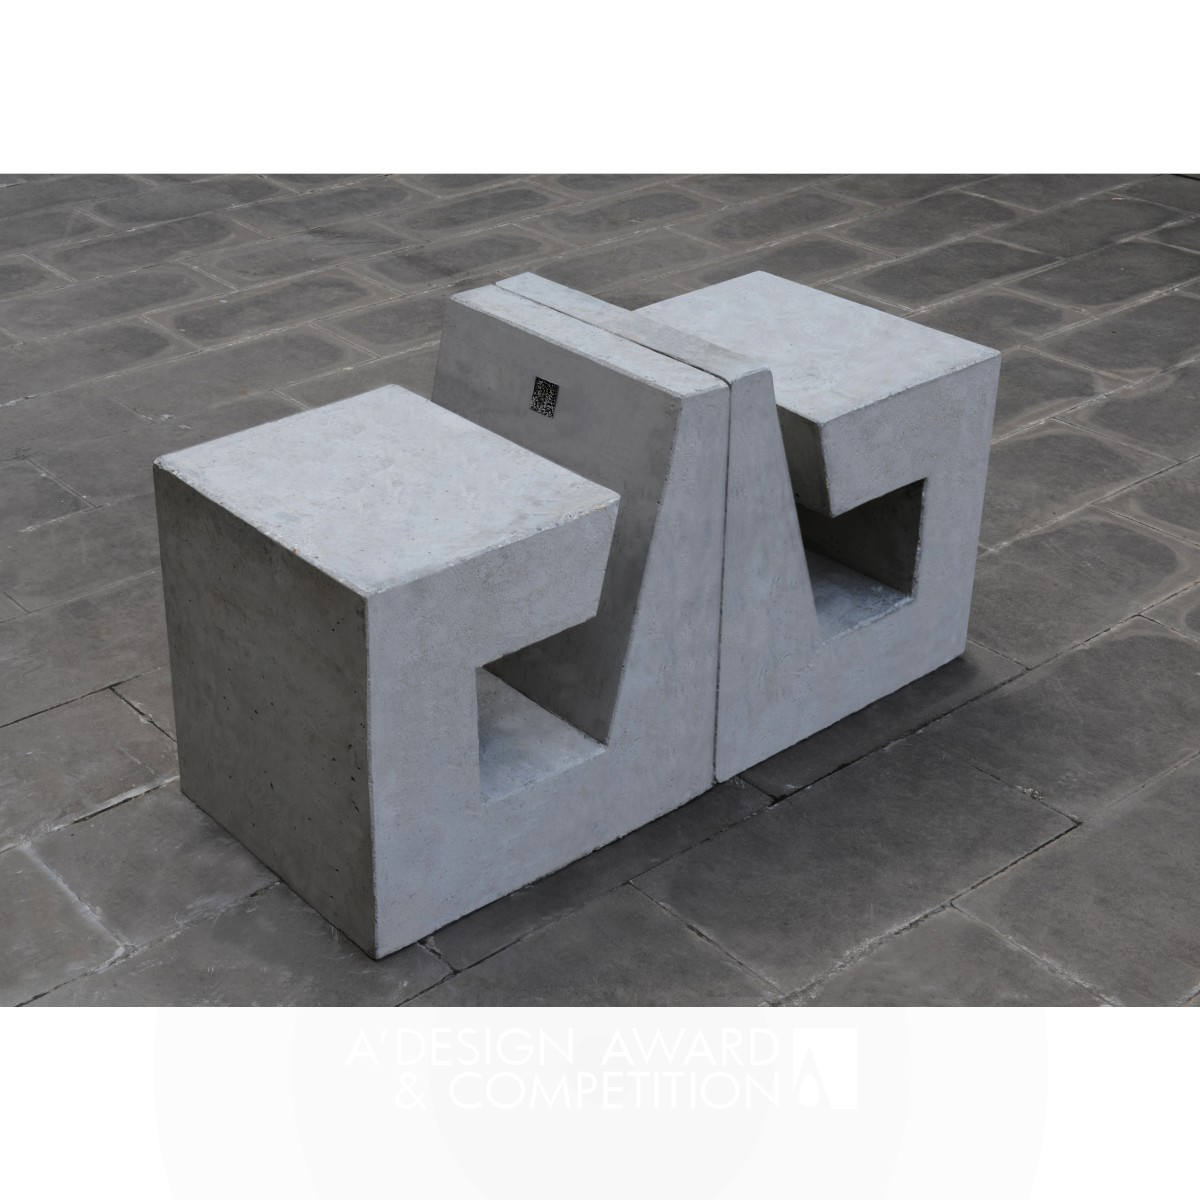 B-Shape Concrete Public Seating